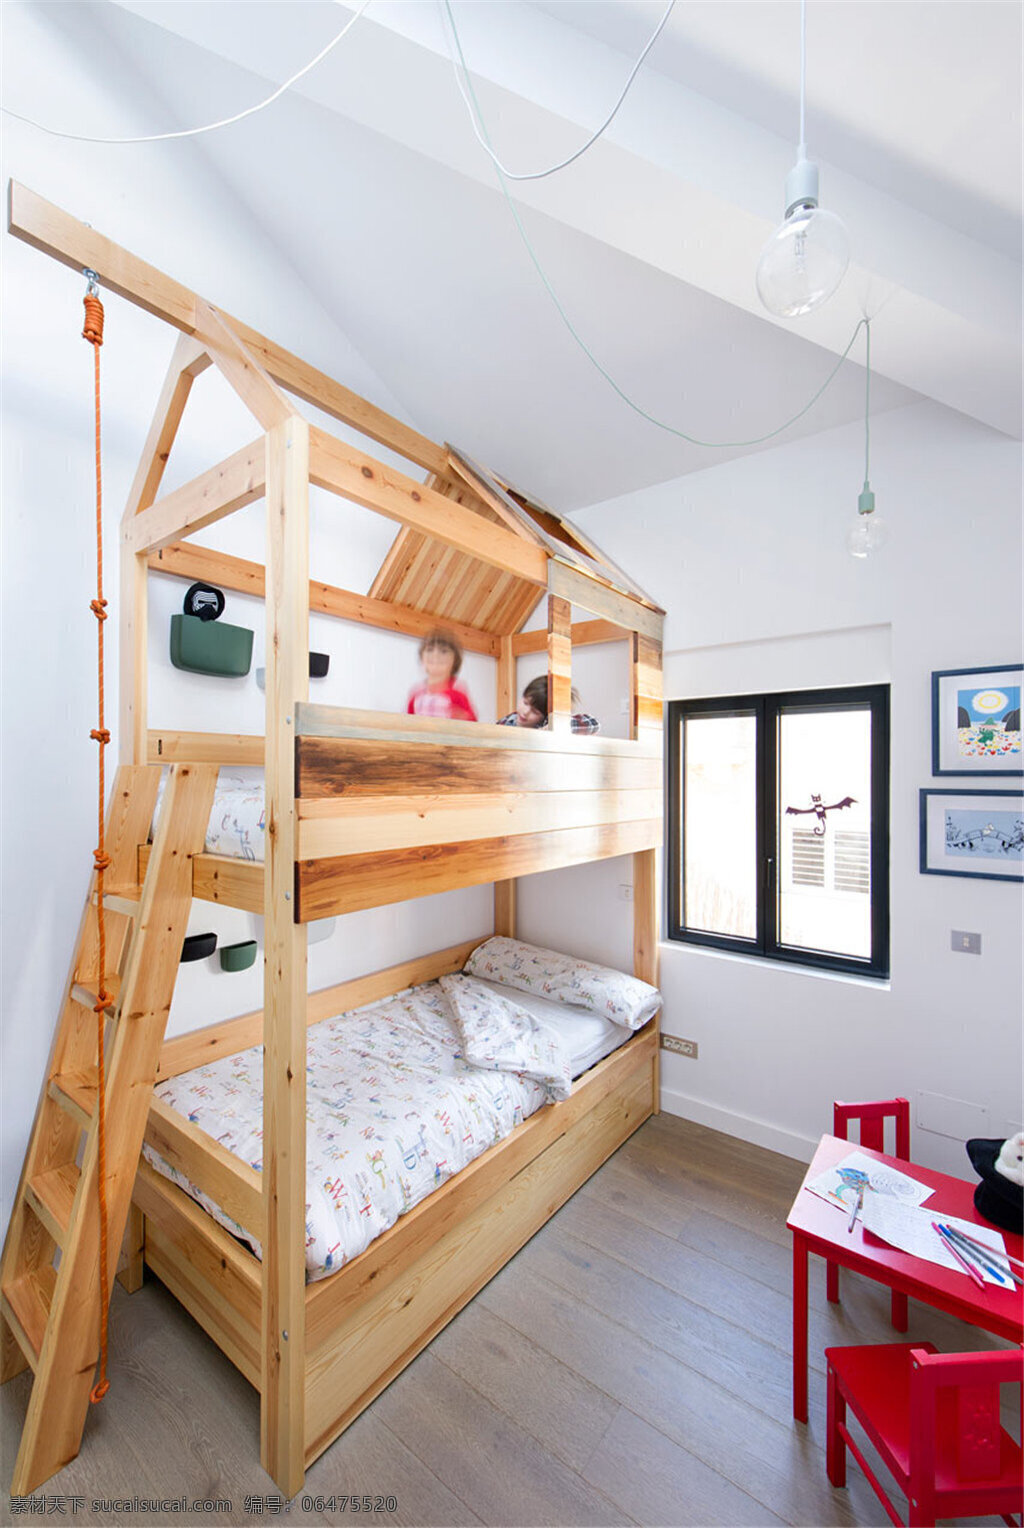 美式 学生 卧室 设计图 家居 家居生活 室内设计 装修 室内 家具 装修设计 环境设计 双层床